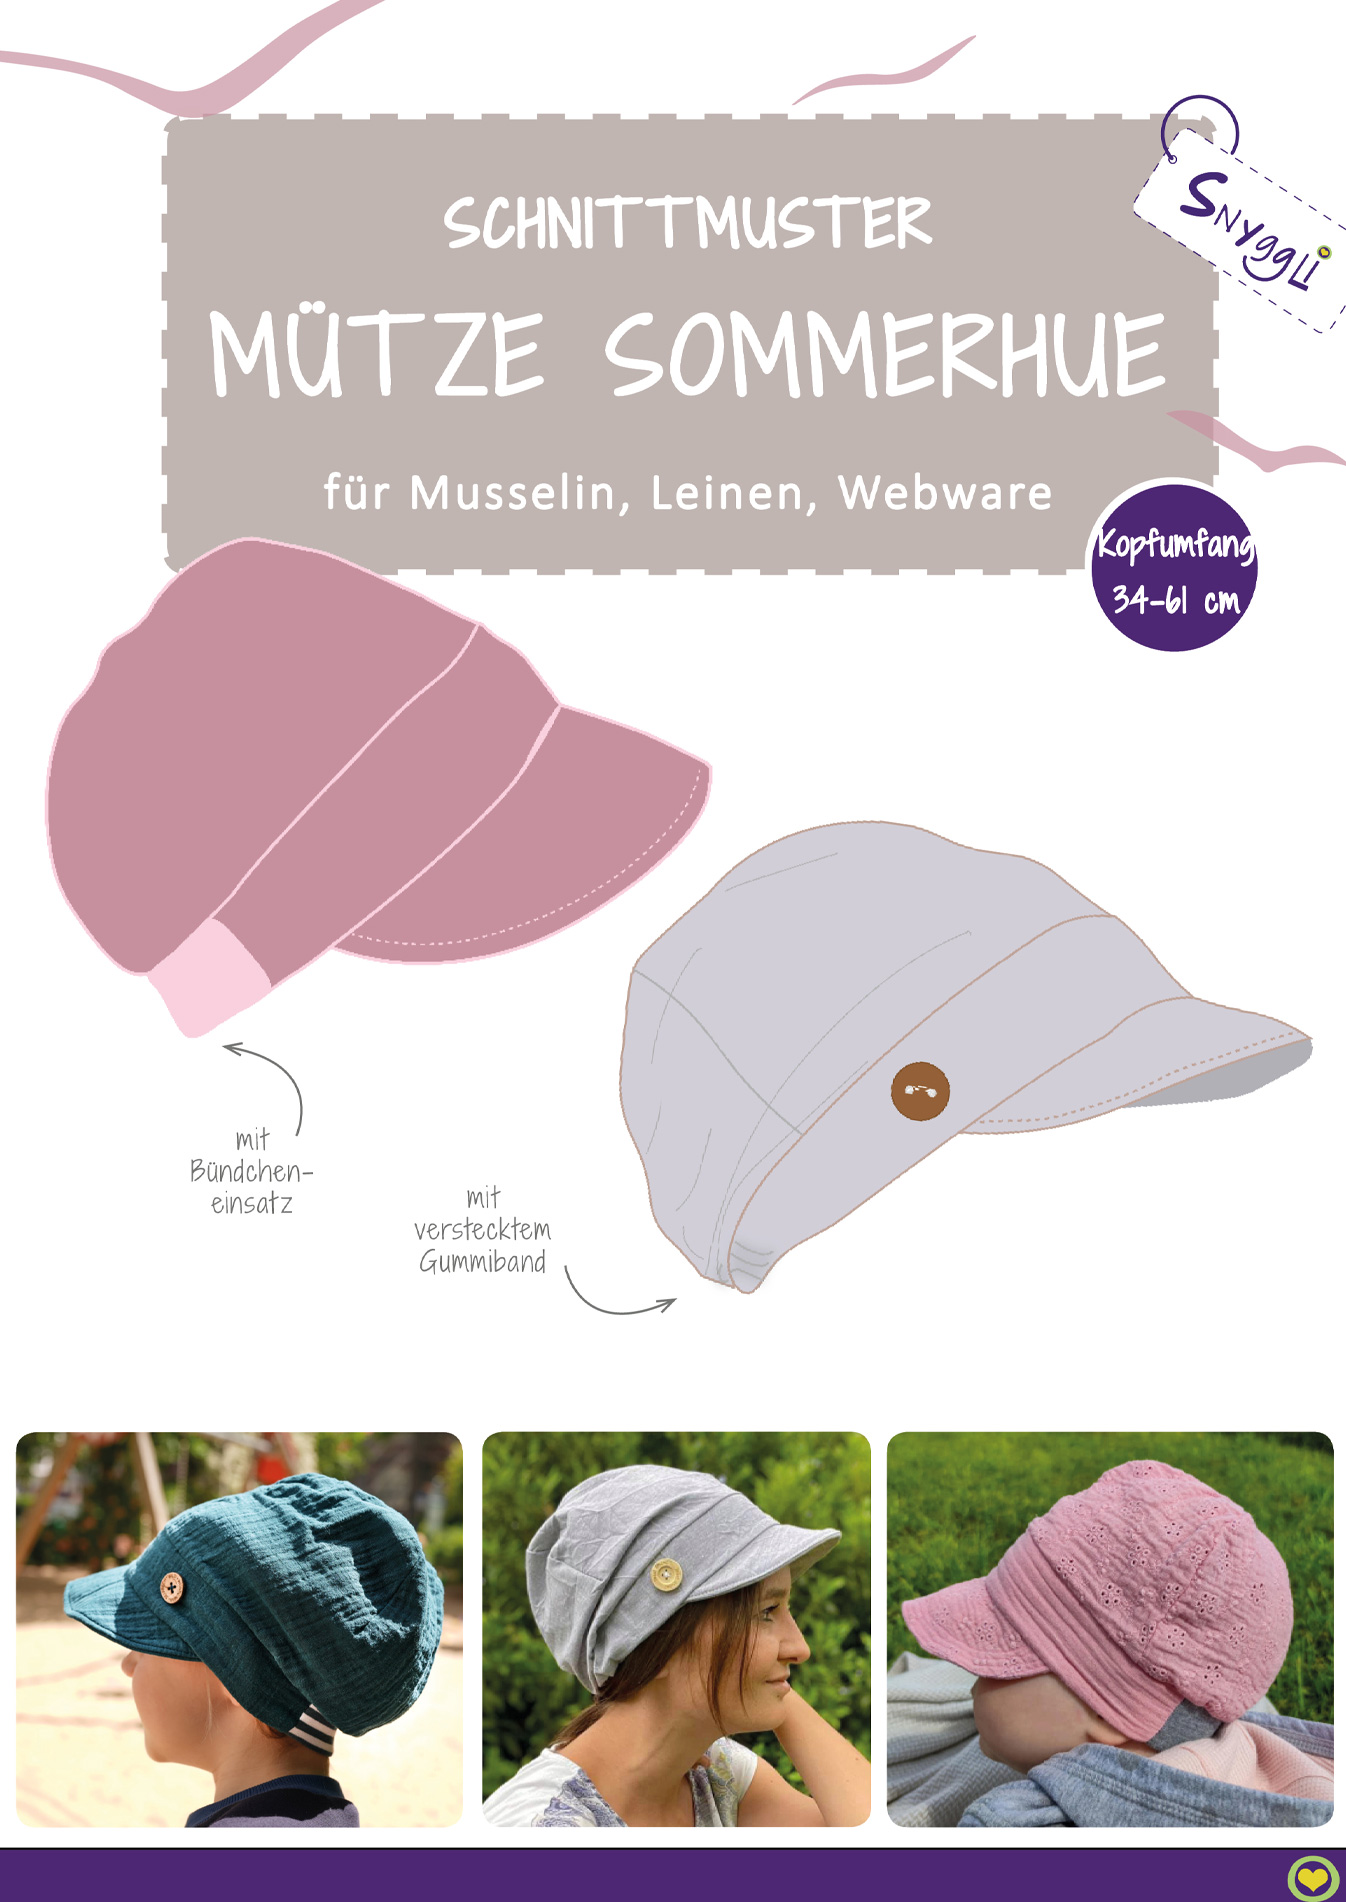 Snyggli-Schnittmuster-Musselin-Mütze-Sommerhue-Baby-Kinder-Damen-Herren_cover